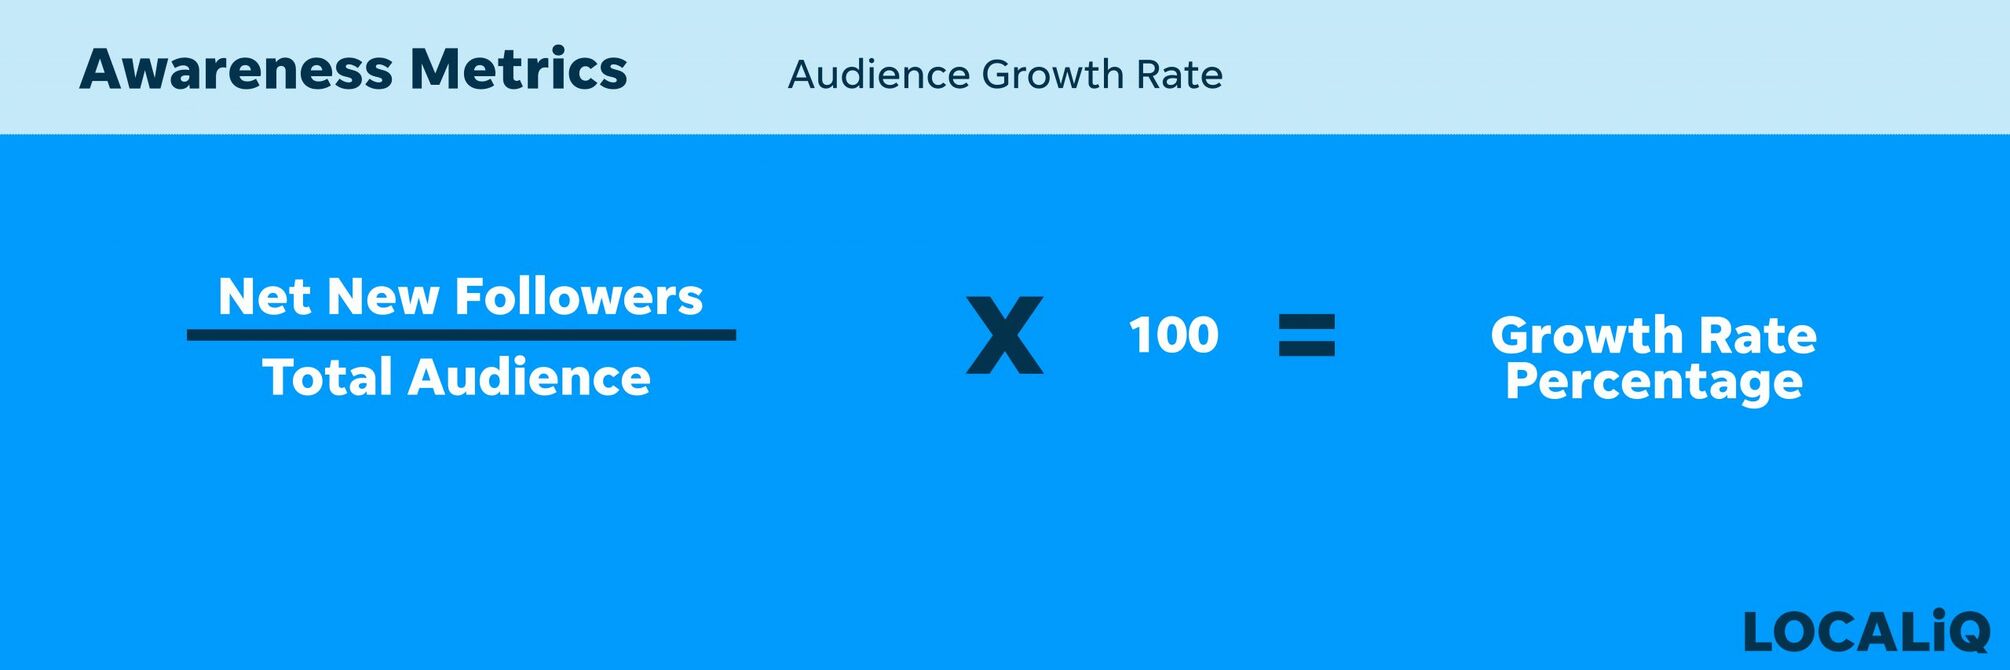 Awareness Metrics| Audience Growth Rate.